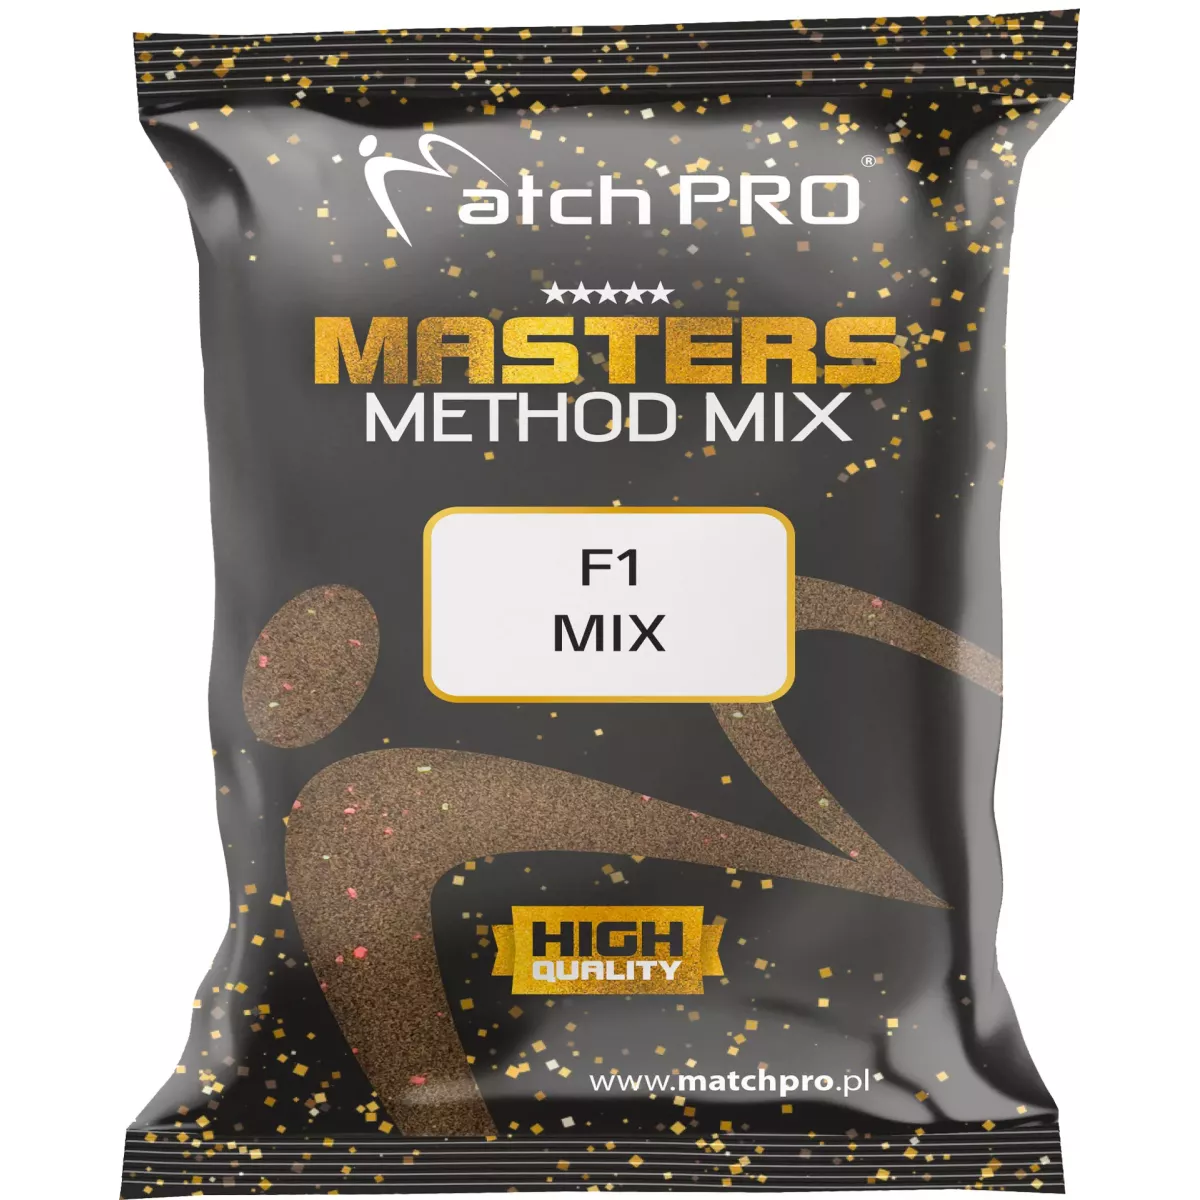 Zanęta MatchPro Method Mix Masters 700g - F1 MIX